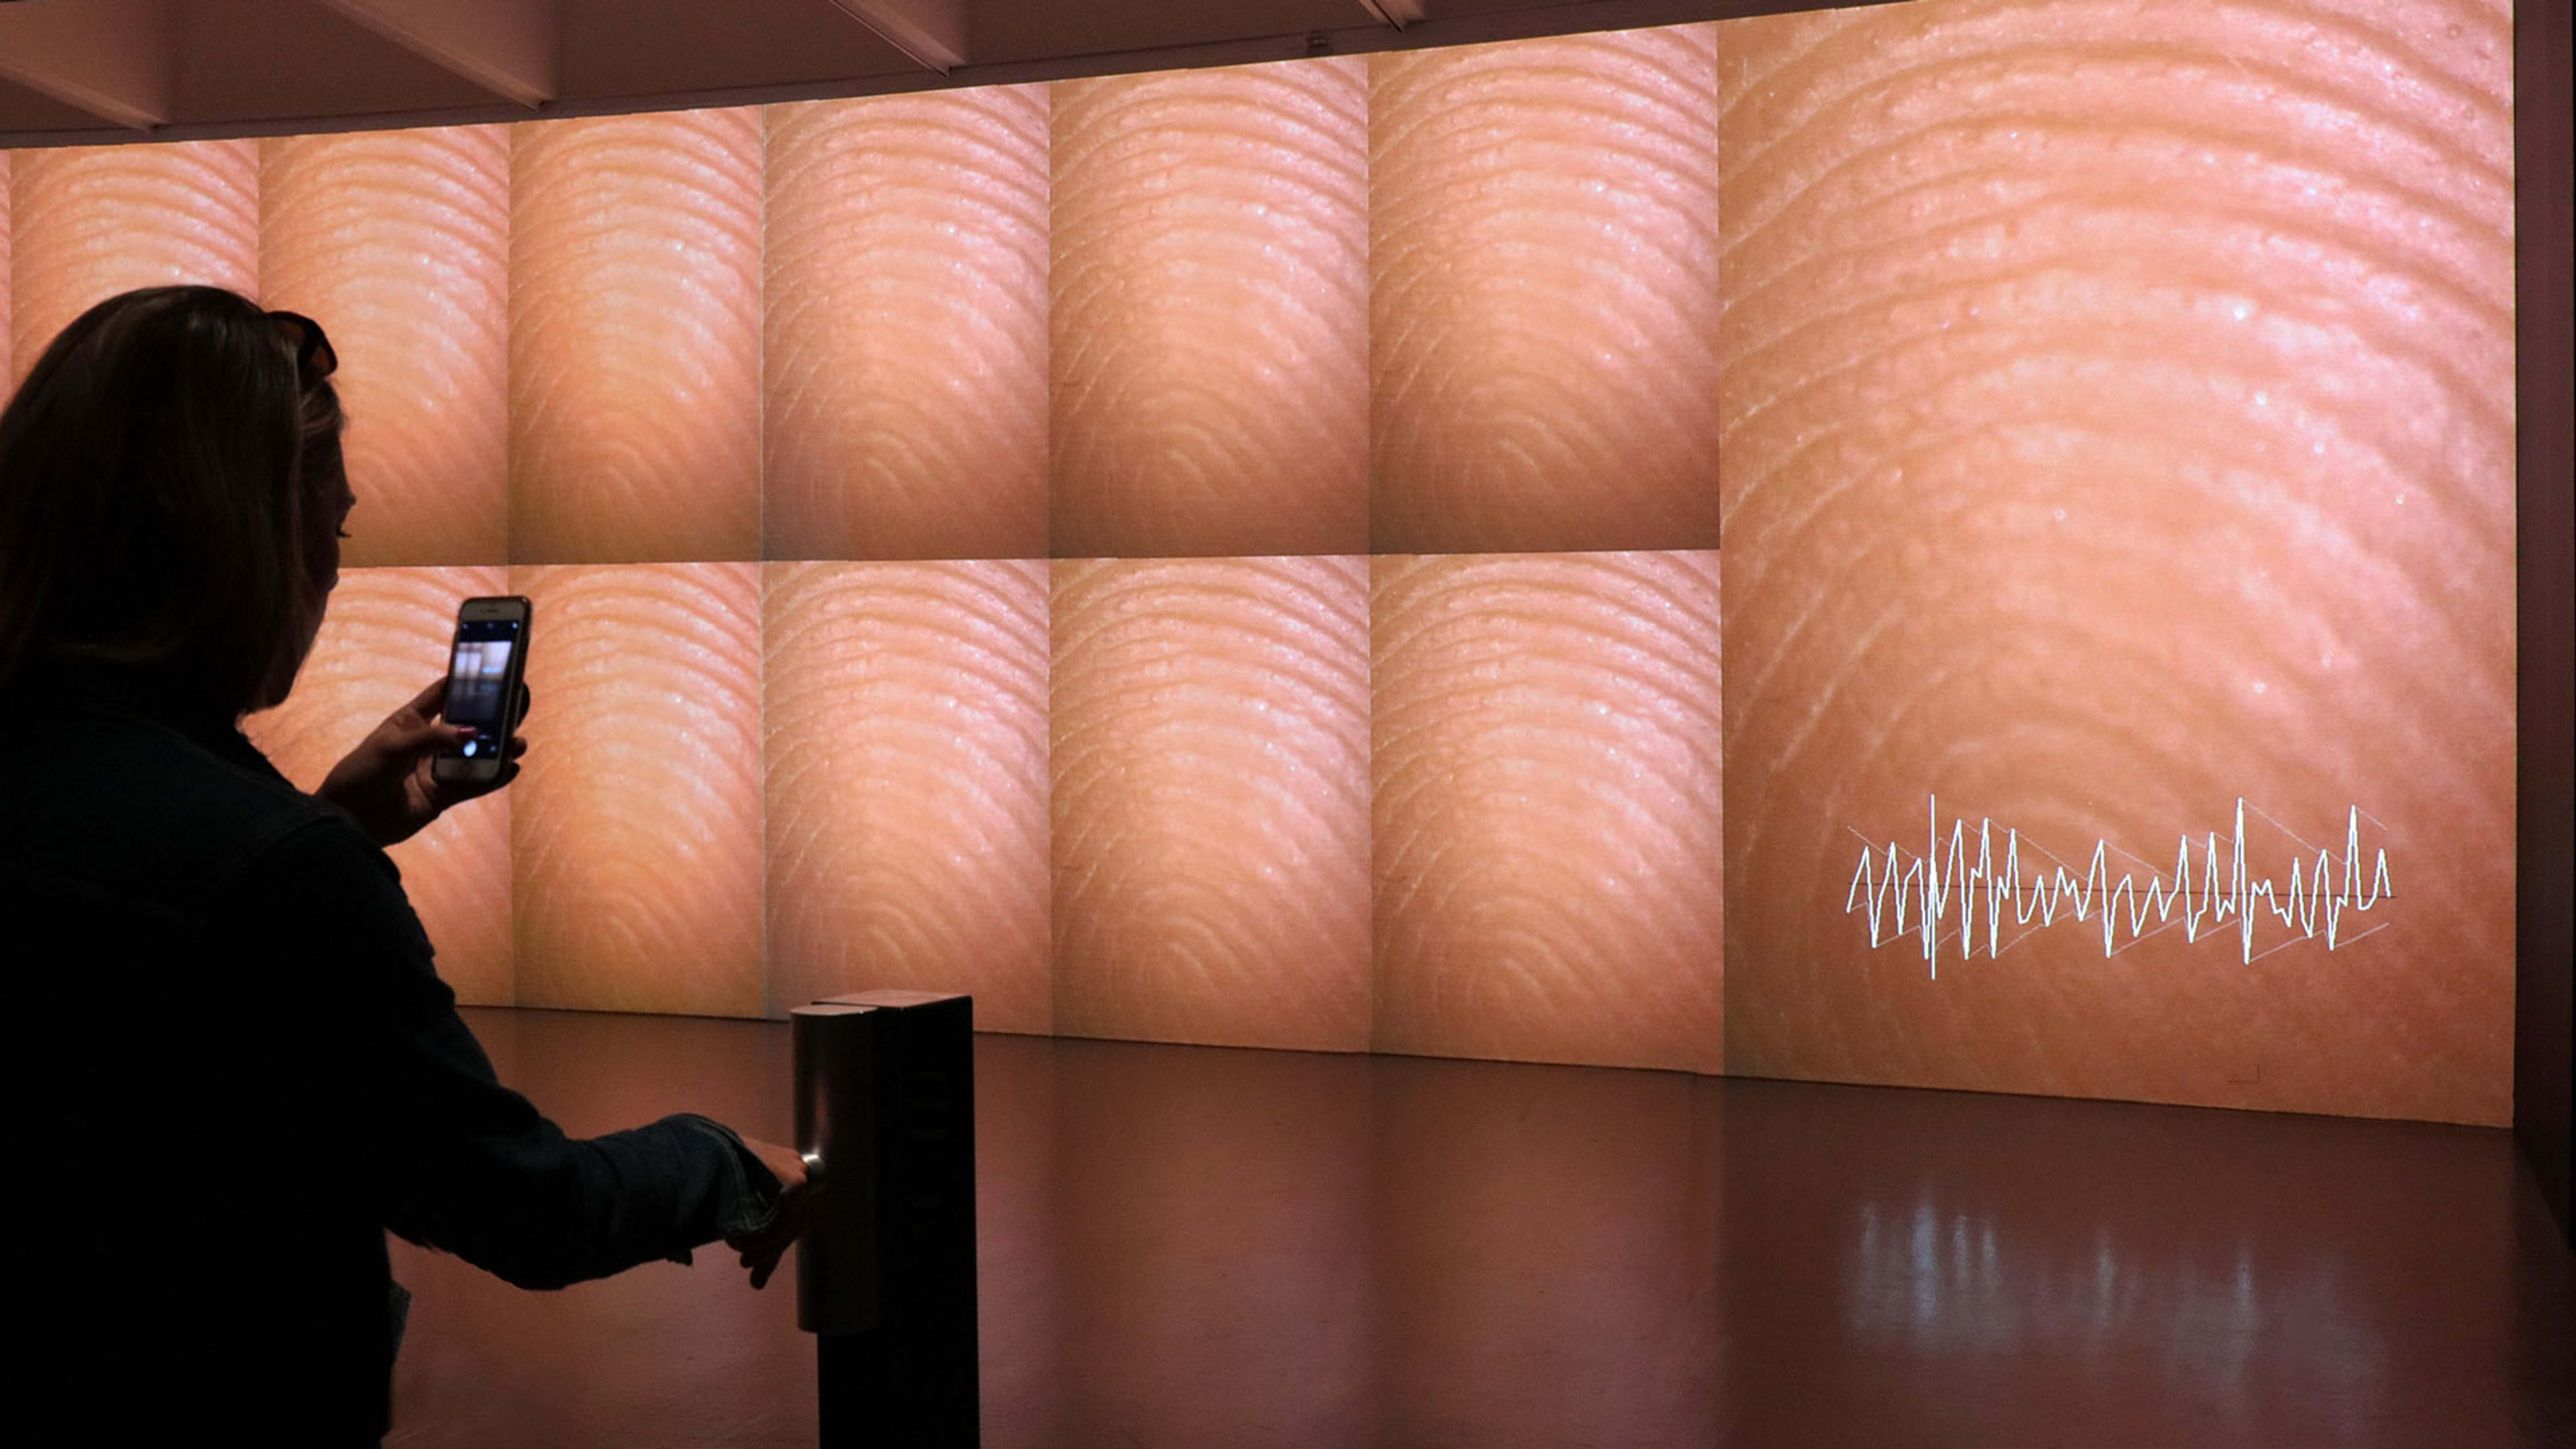 How Rafael Lozano-Hemmer uses your biometric data to create art